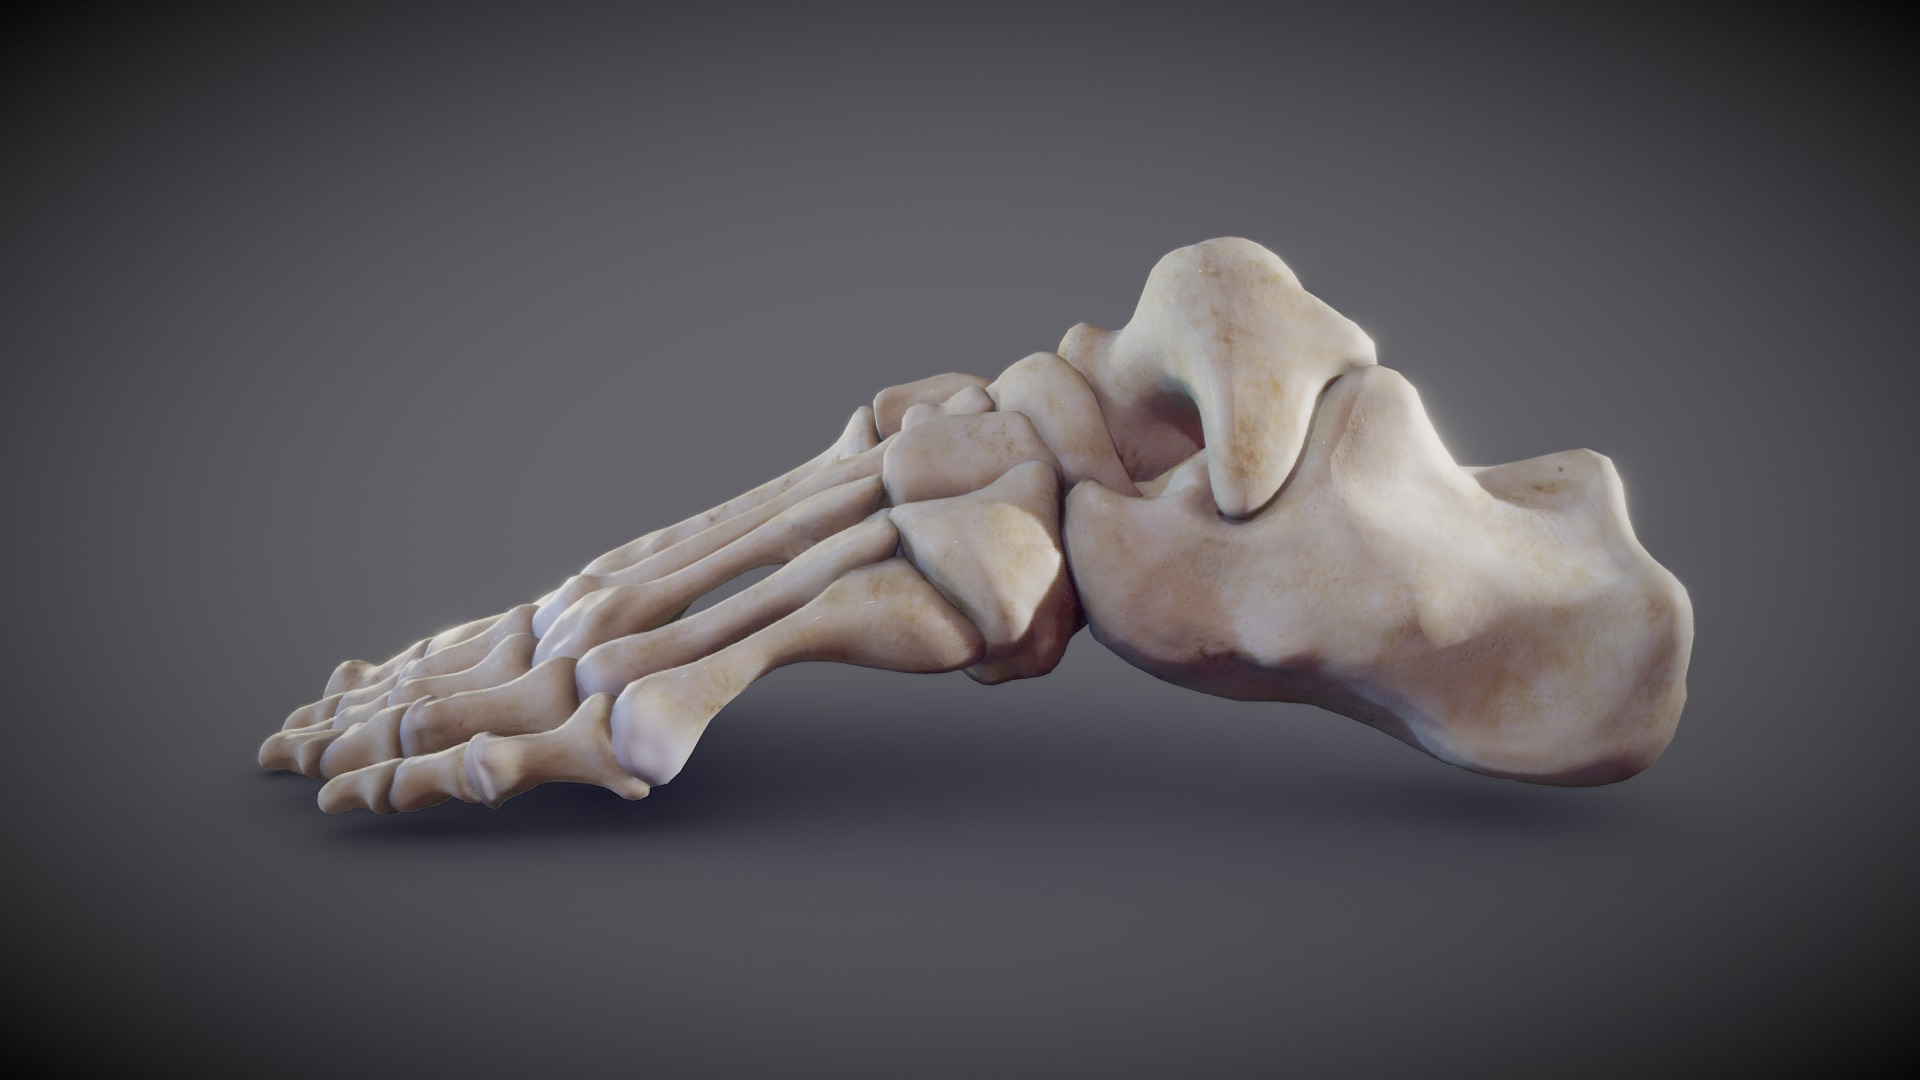 Stapes - ear bone - 3D model by robotron (@robotron) [69dfcce]